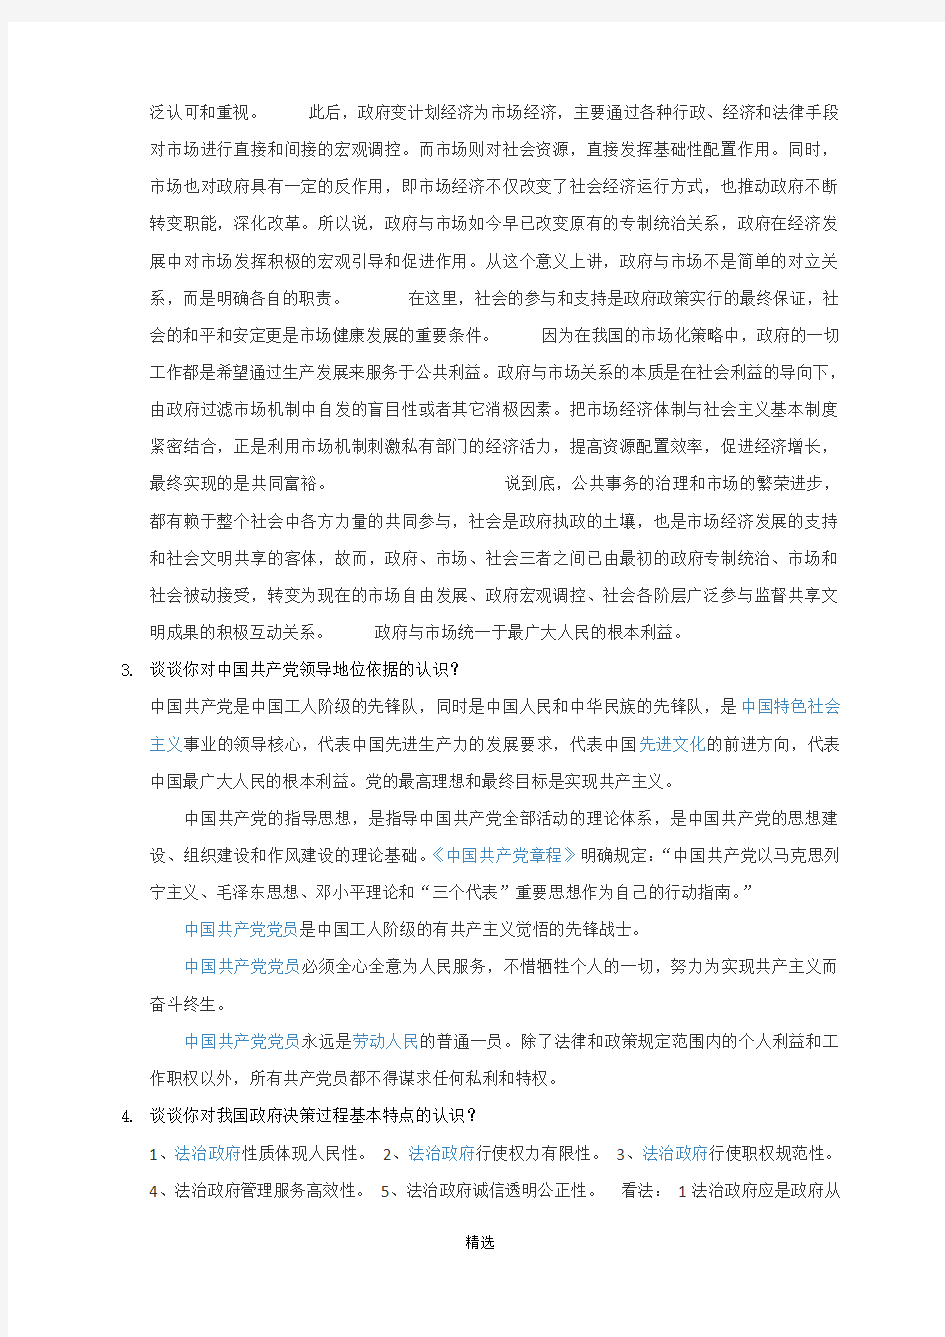 080230当代中国政府与行政在线考试(开卷)题目